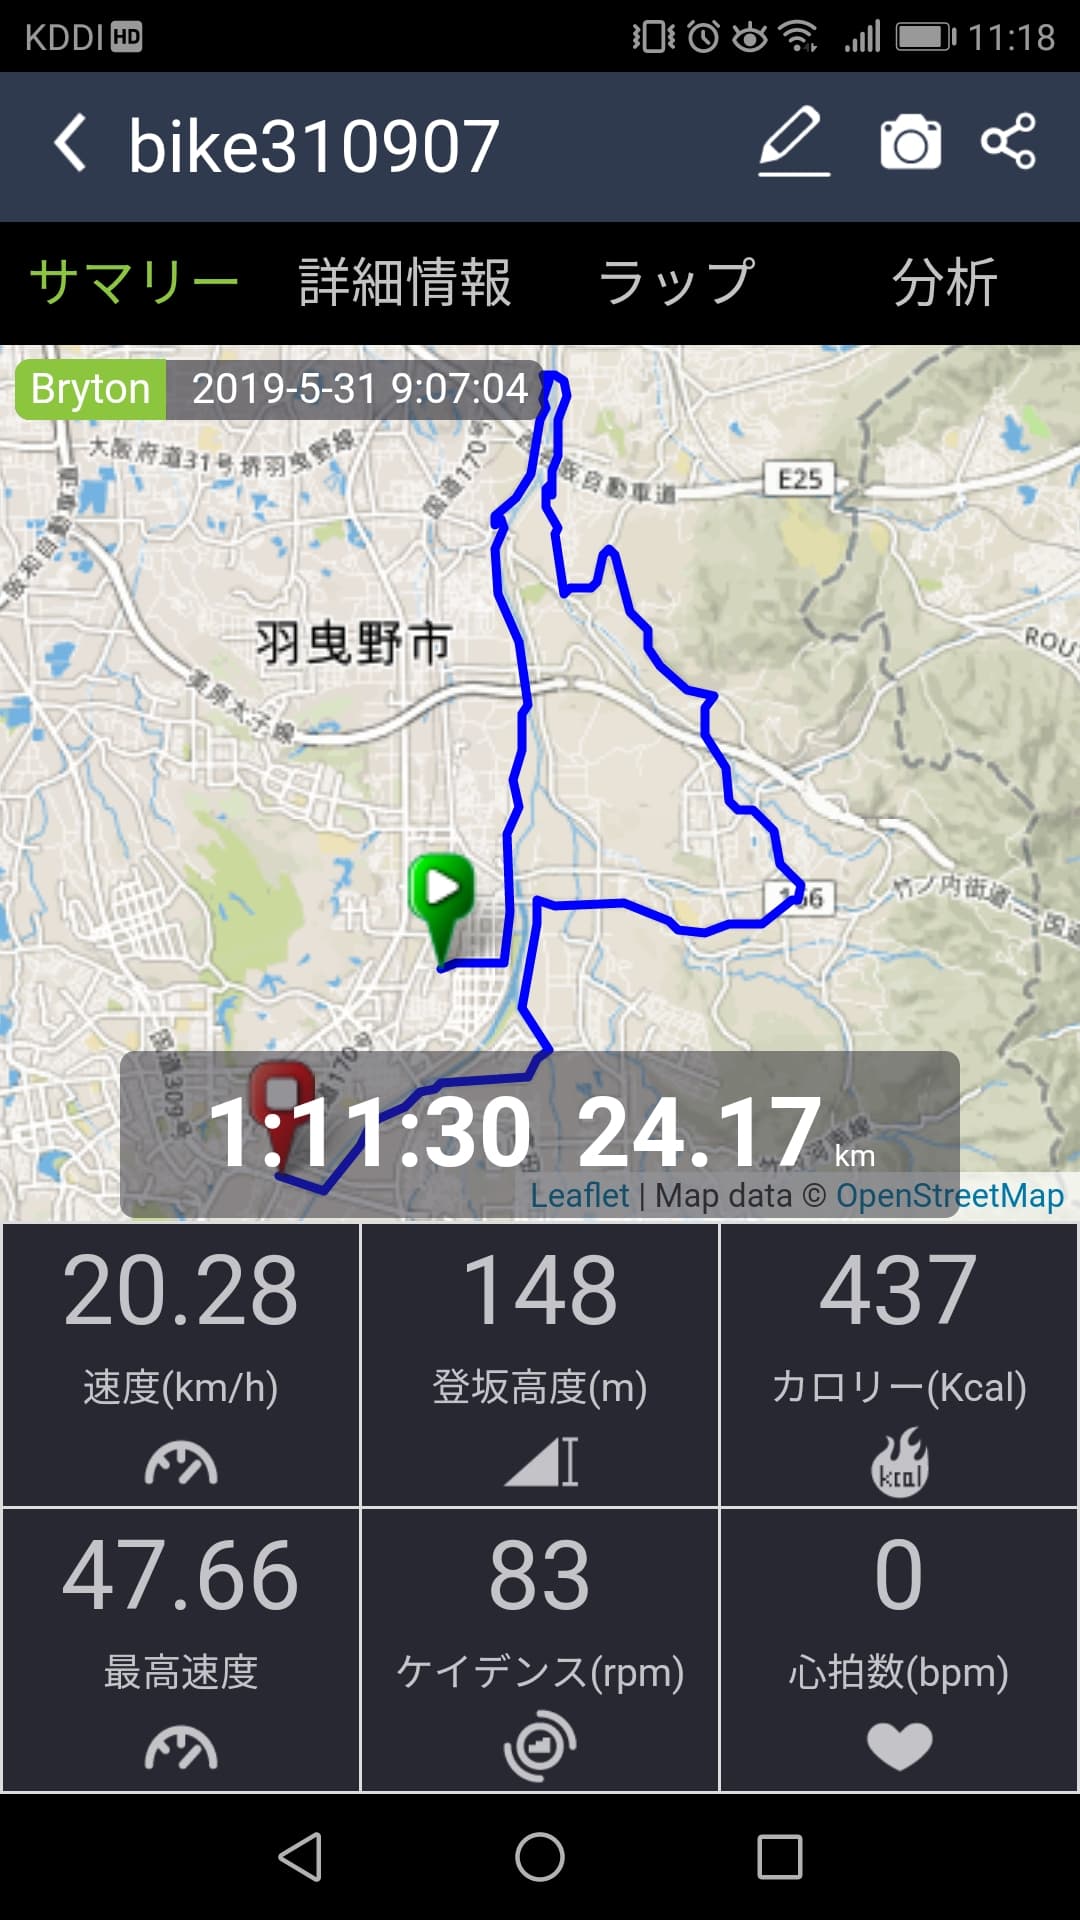 【初心者でも大丈夫】クロスバイクでモーニングライド(石川→南河内グリーンロード)